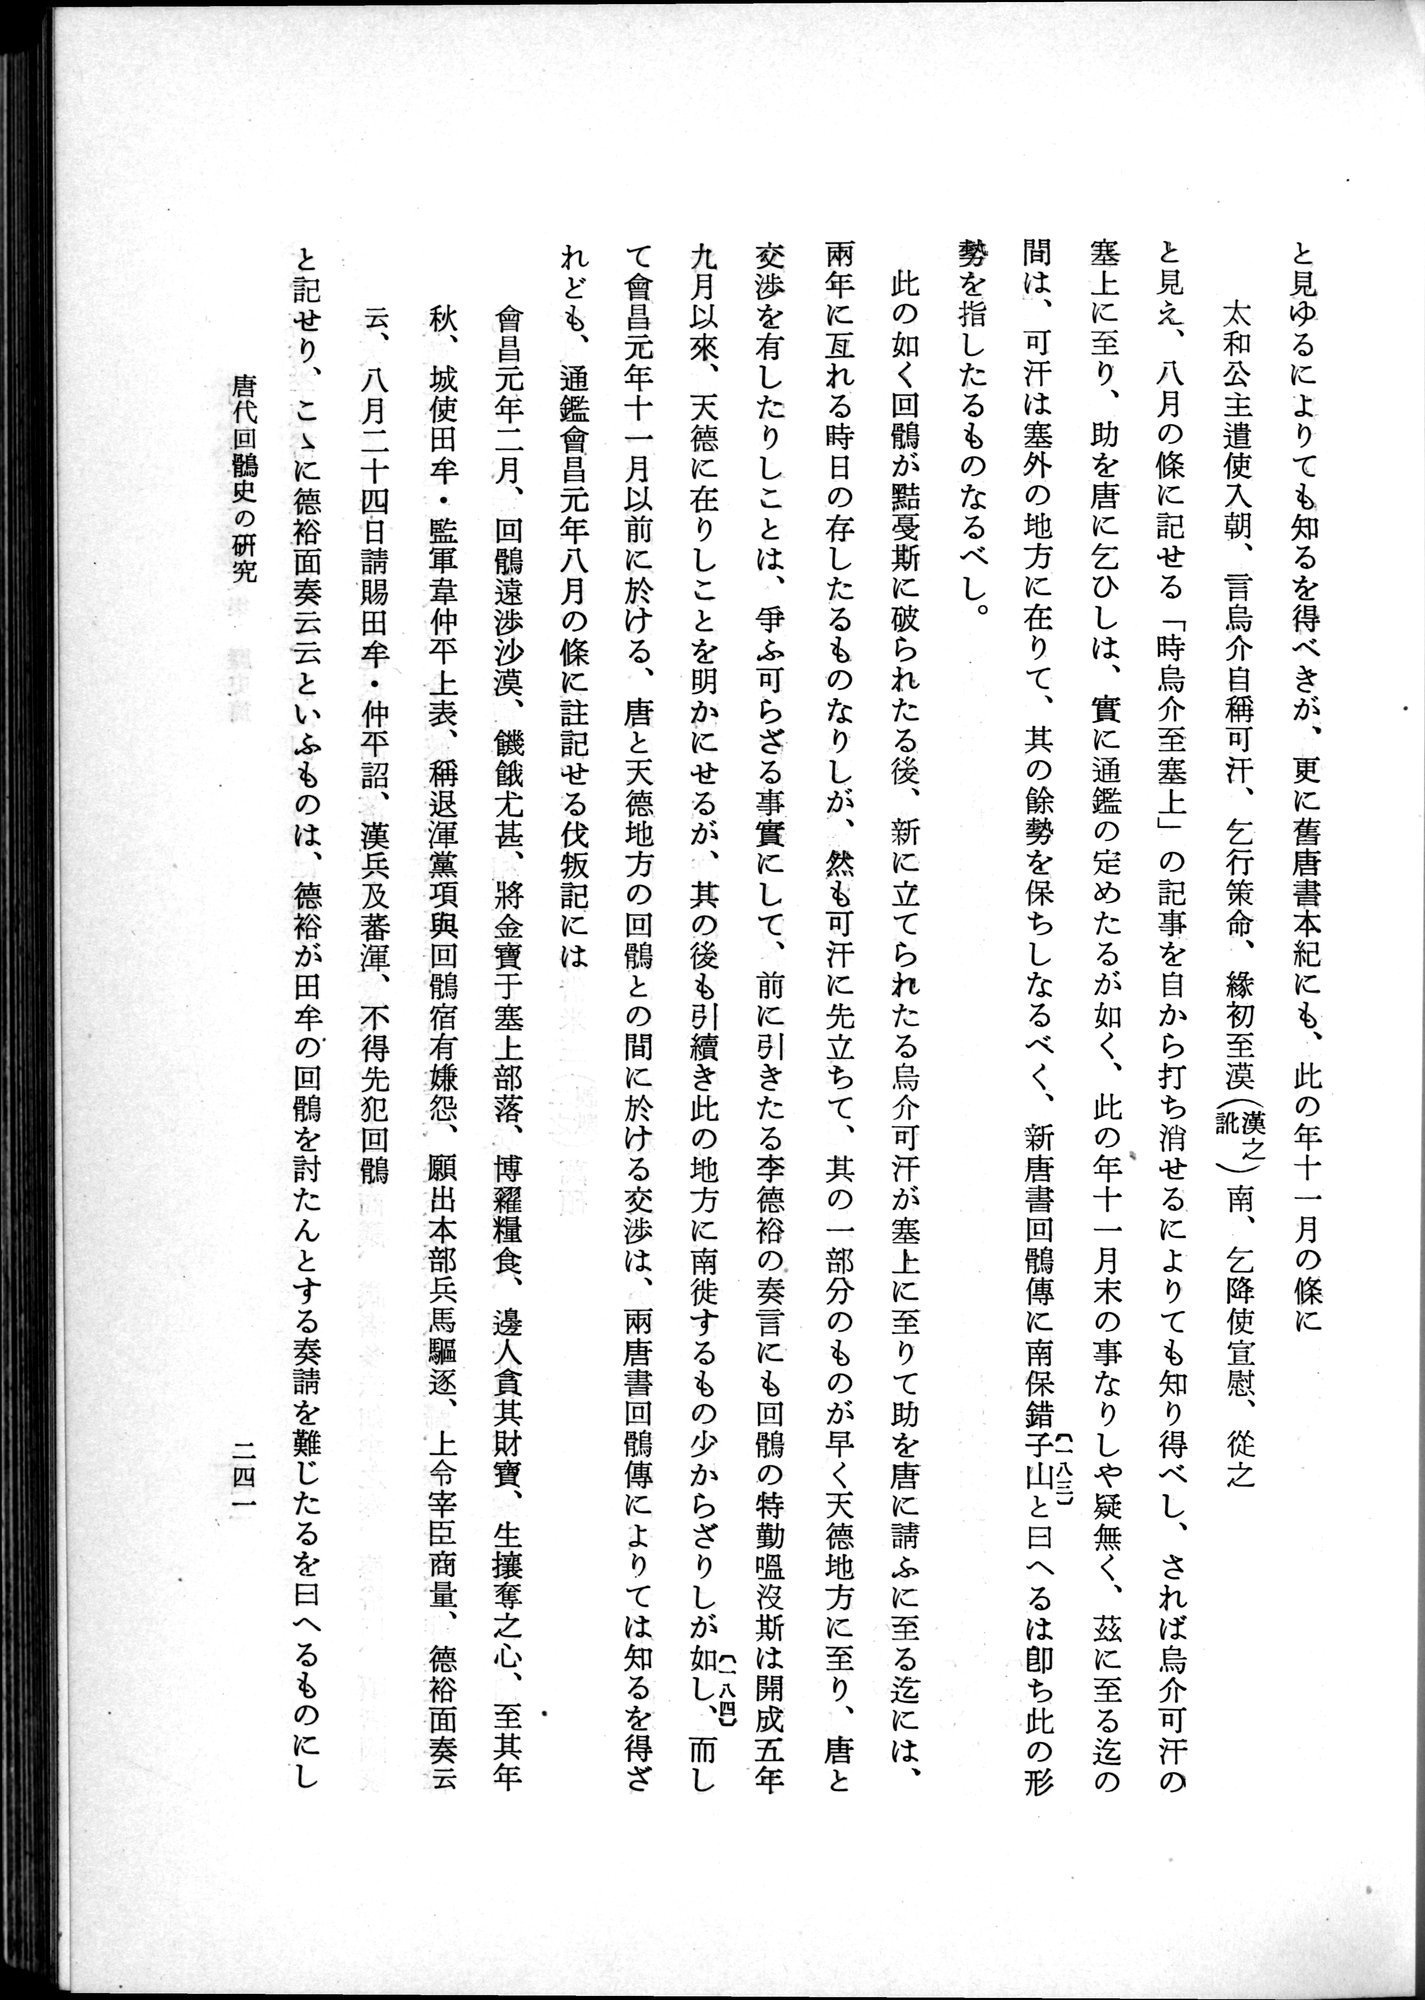 羽田博士史学論文集 : vol.1 / Page 279 (Grayscale High Resolution Image)